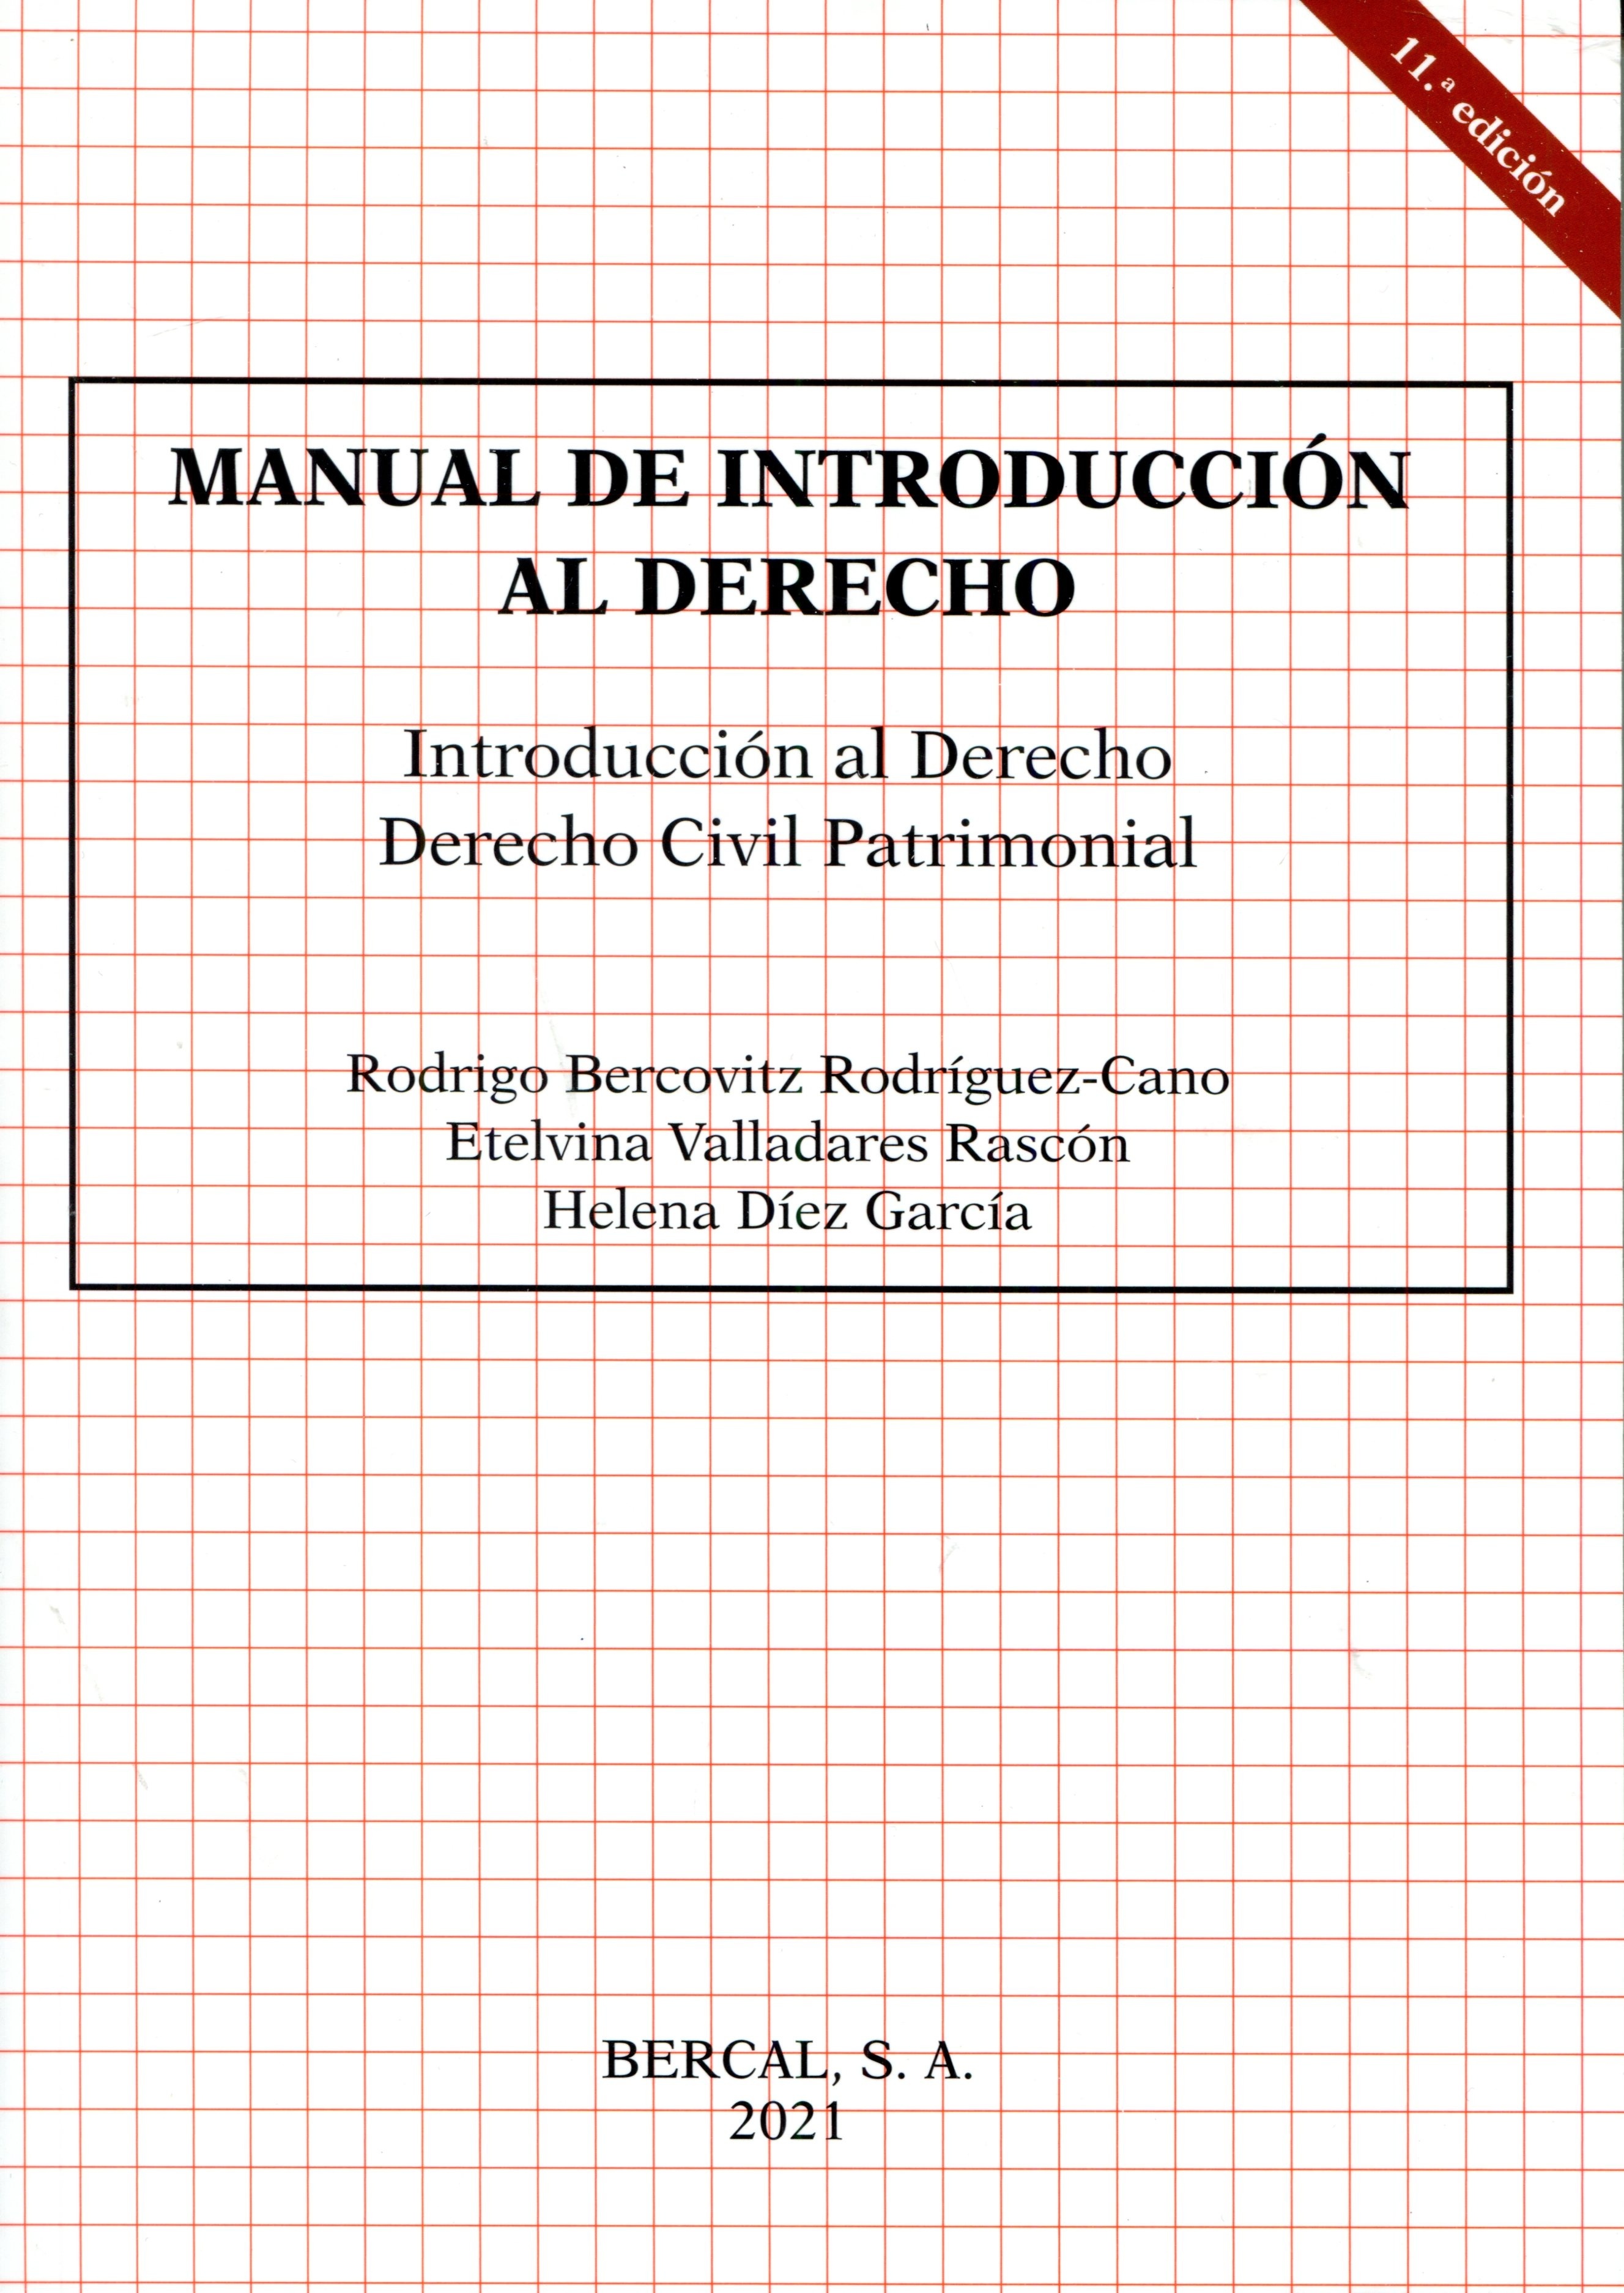 Manual de Introducción al Derecho. Introducción al Derecho. Derecho Civil Patrimonial.